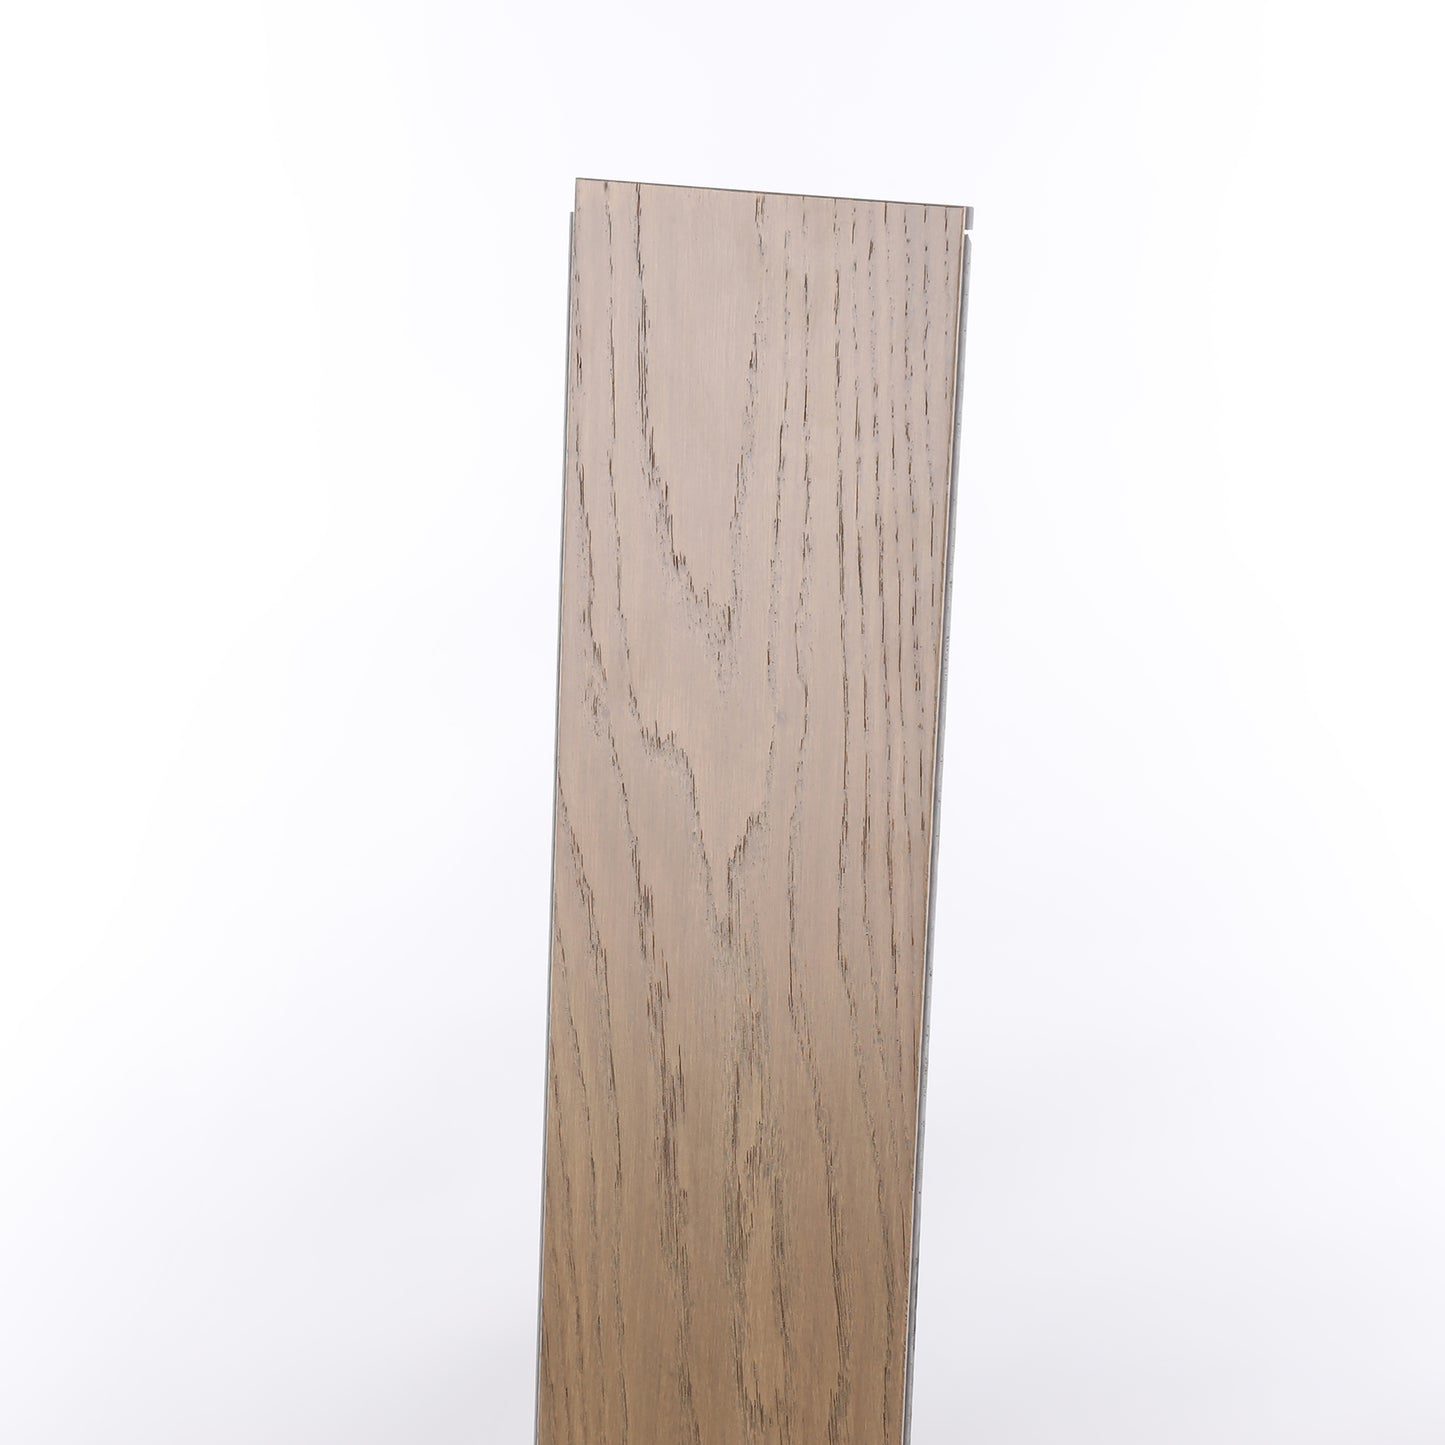 7mm Banff Waterproof Engineered Hardwood Flooring 5 in. Wide x Varying Length Long